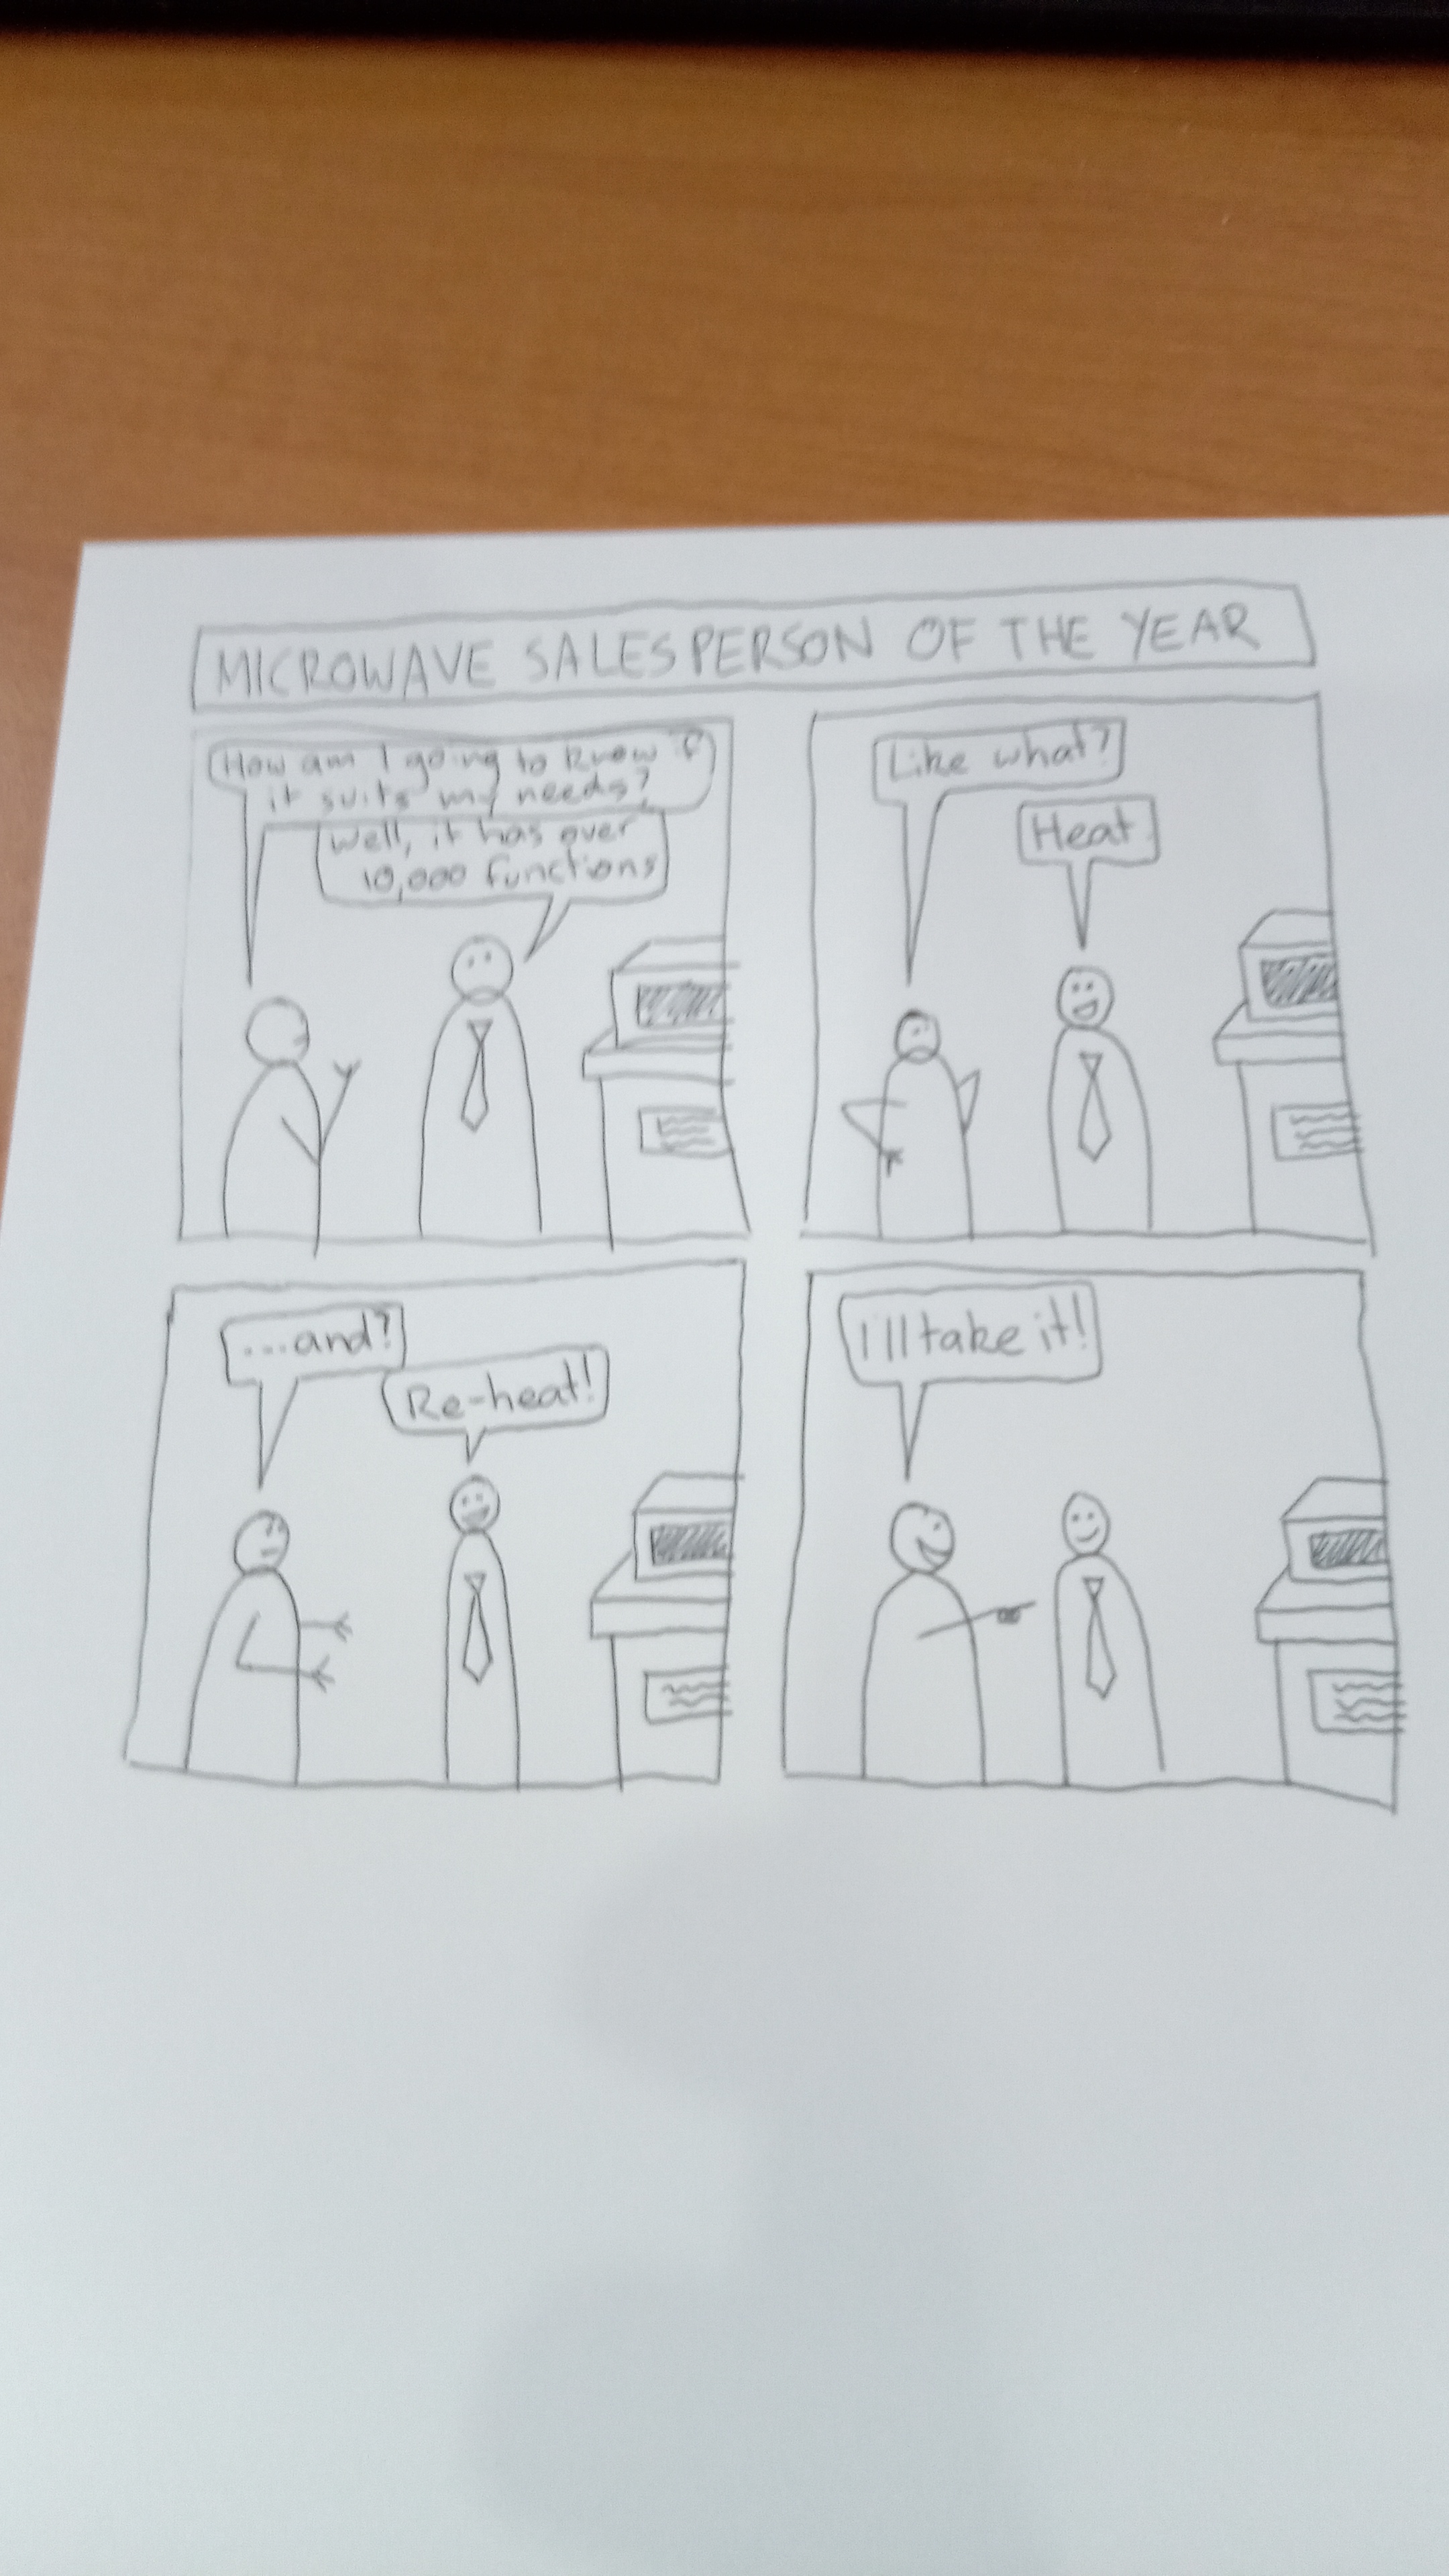 a comic I drew at work